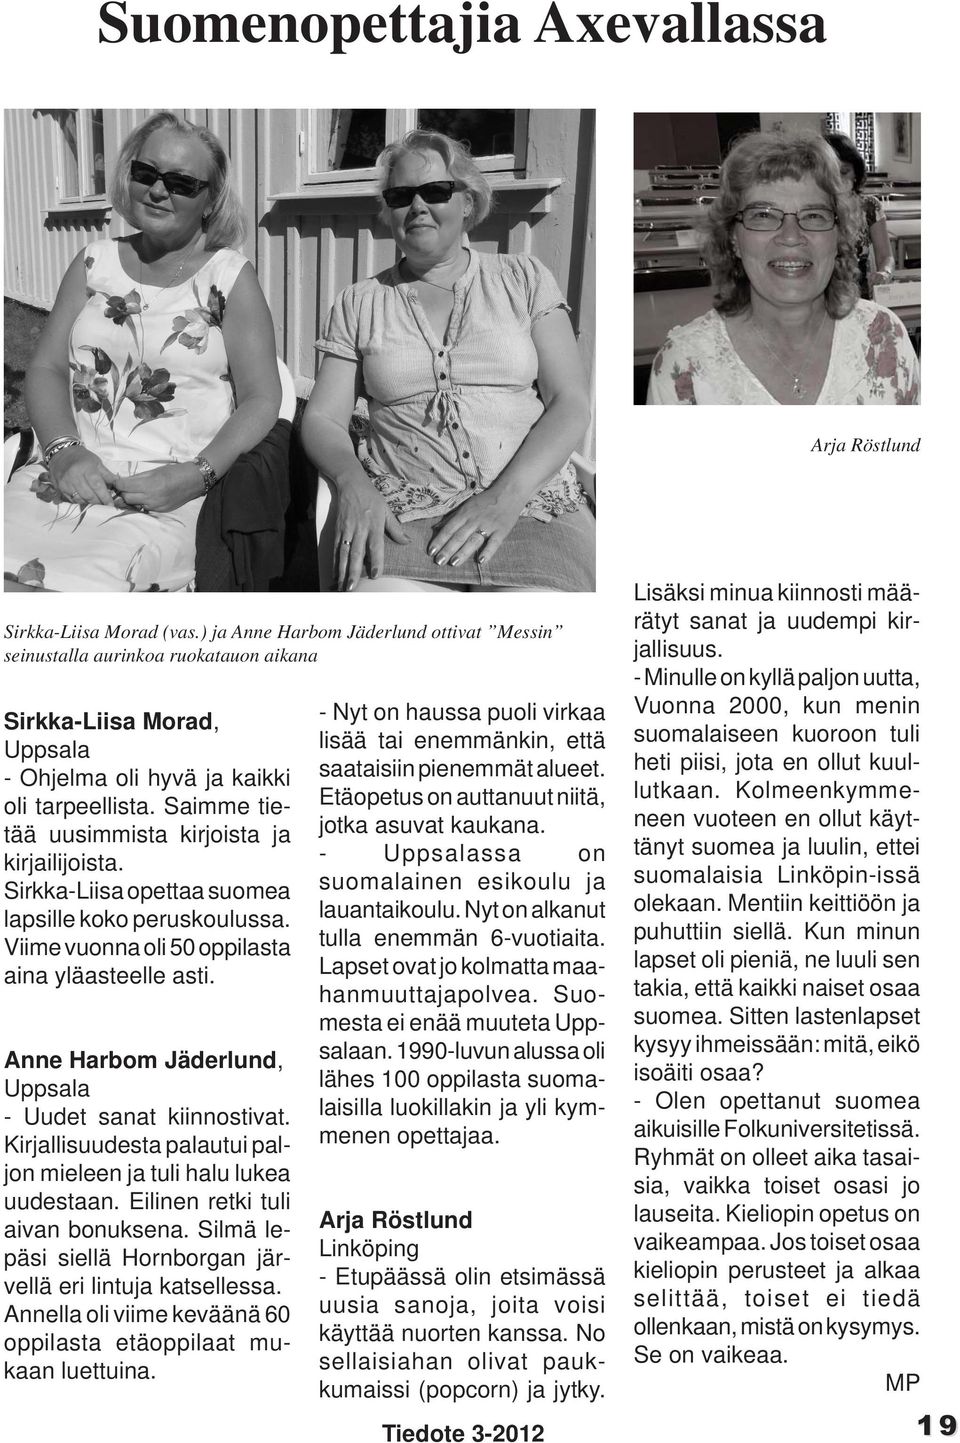 Saimme tietää uusimmista kirjoista ja kirjailijoista. Sirkka-Liisa opettaa suomea lapsille koko peruskoulussa. Viime vuonna oli 50 oppilasta aina yläasteelle asti.